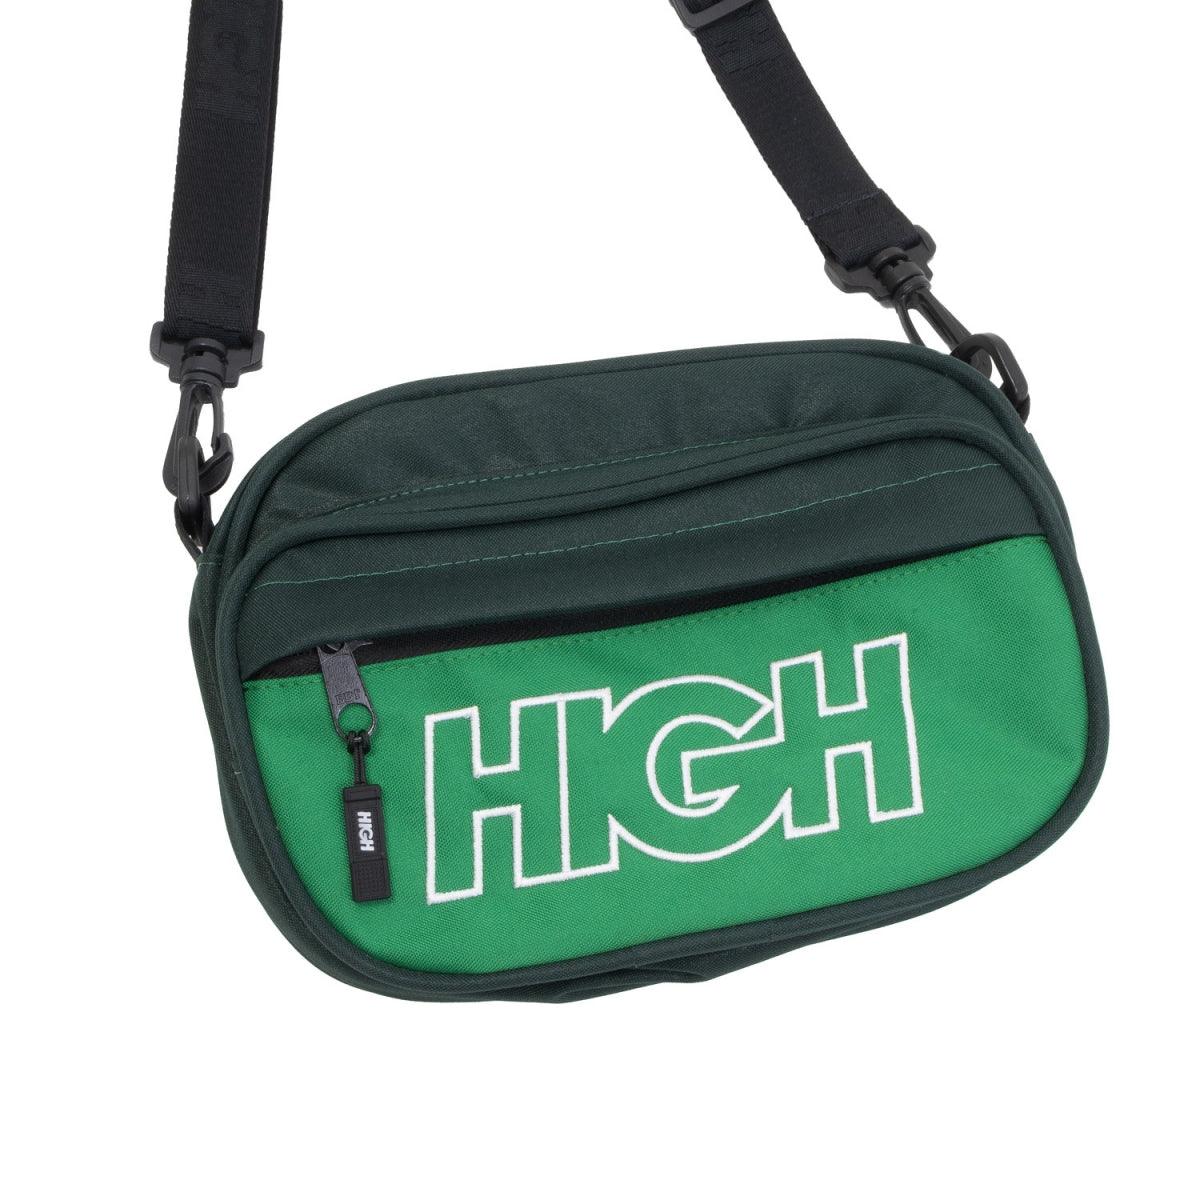 HIGH - Shoulder Bag Green - Slow Office